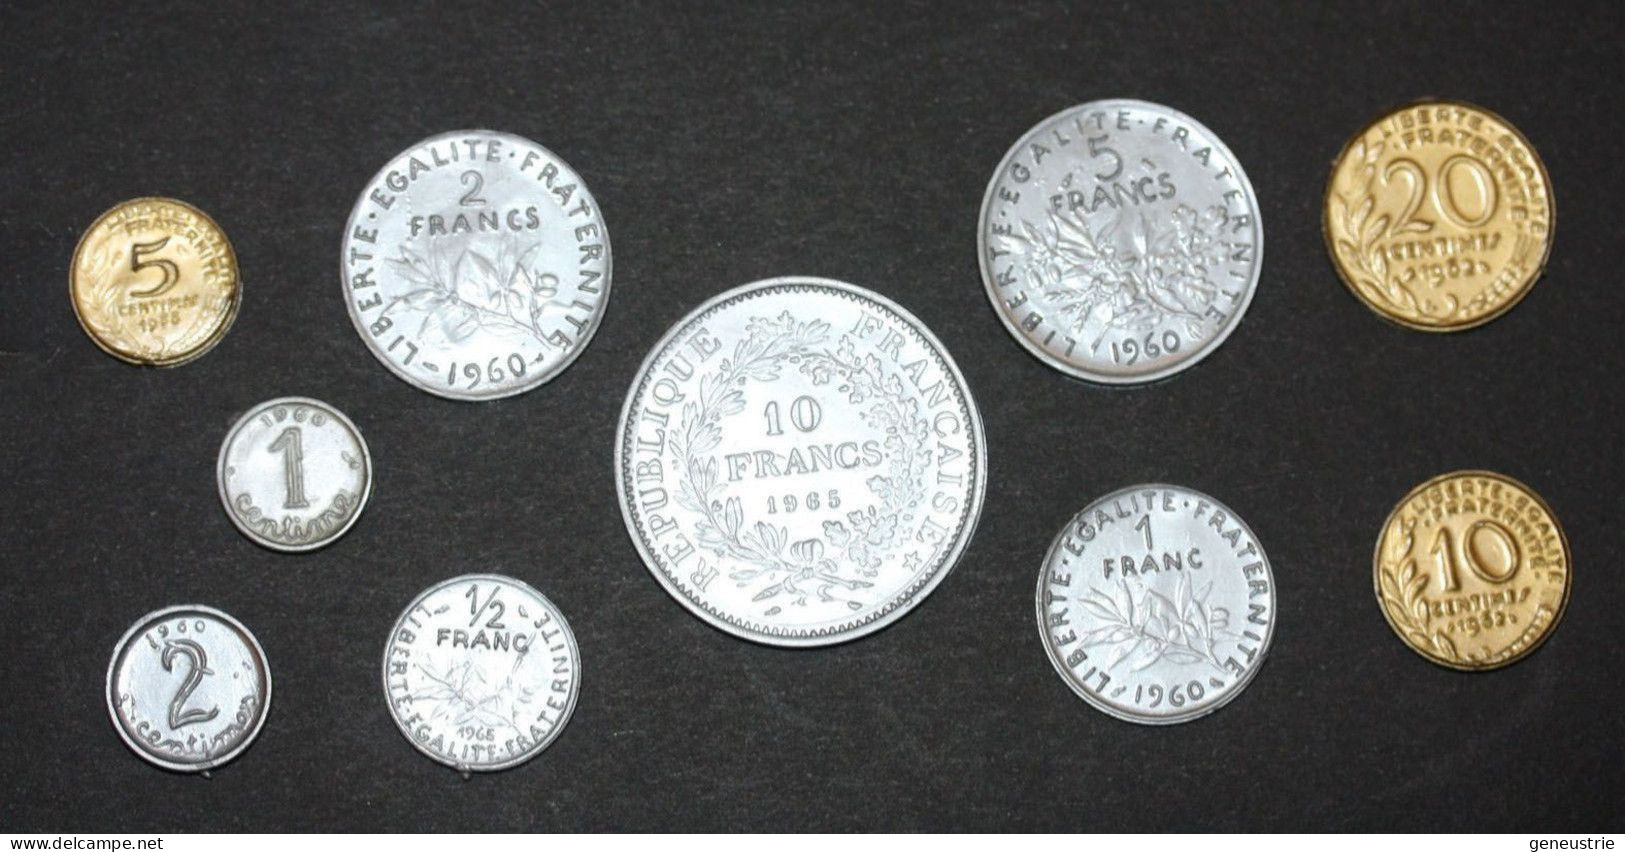 Série De 10 Monnaies Scolaire (1 Centime à 10 Francs) Jeton Plastique école En Francs - Années 60 - Coins School Token - Professionals / Firms